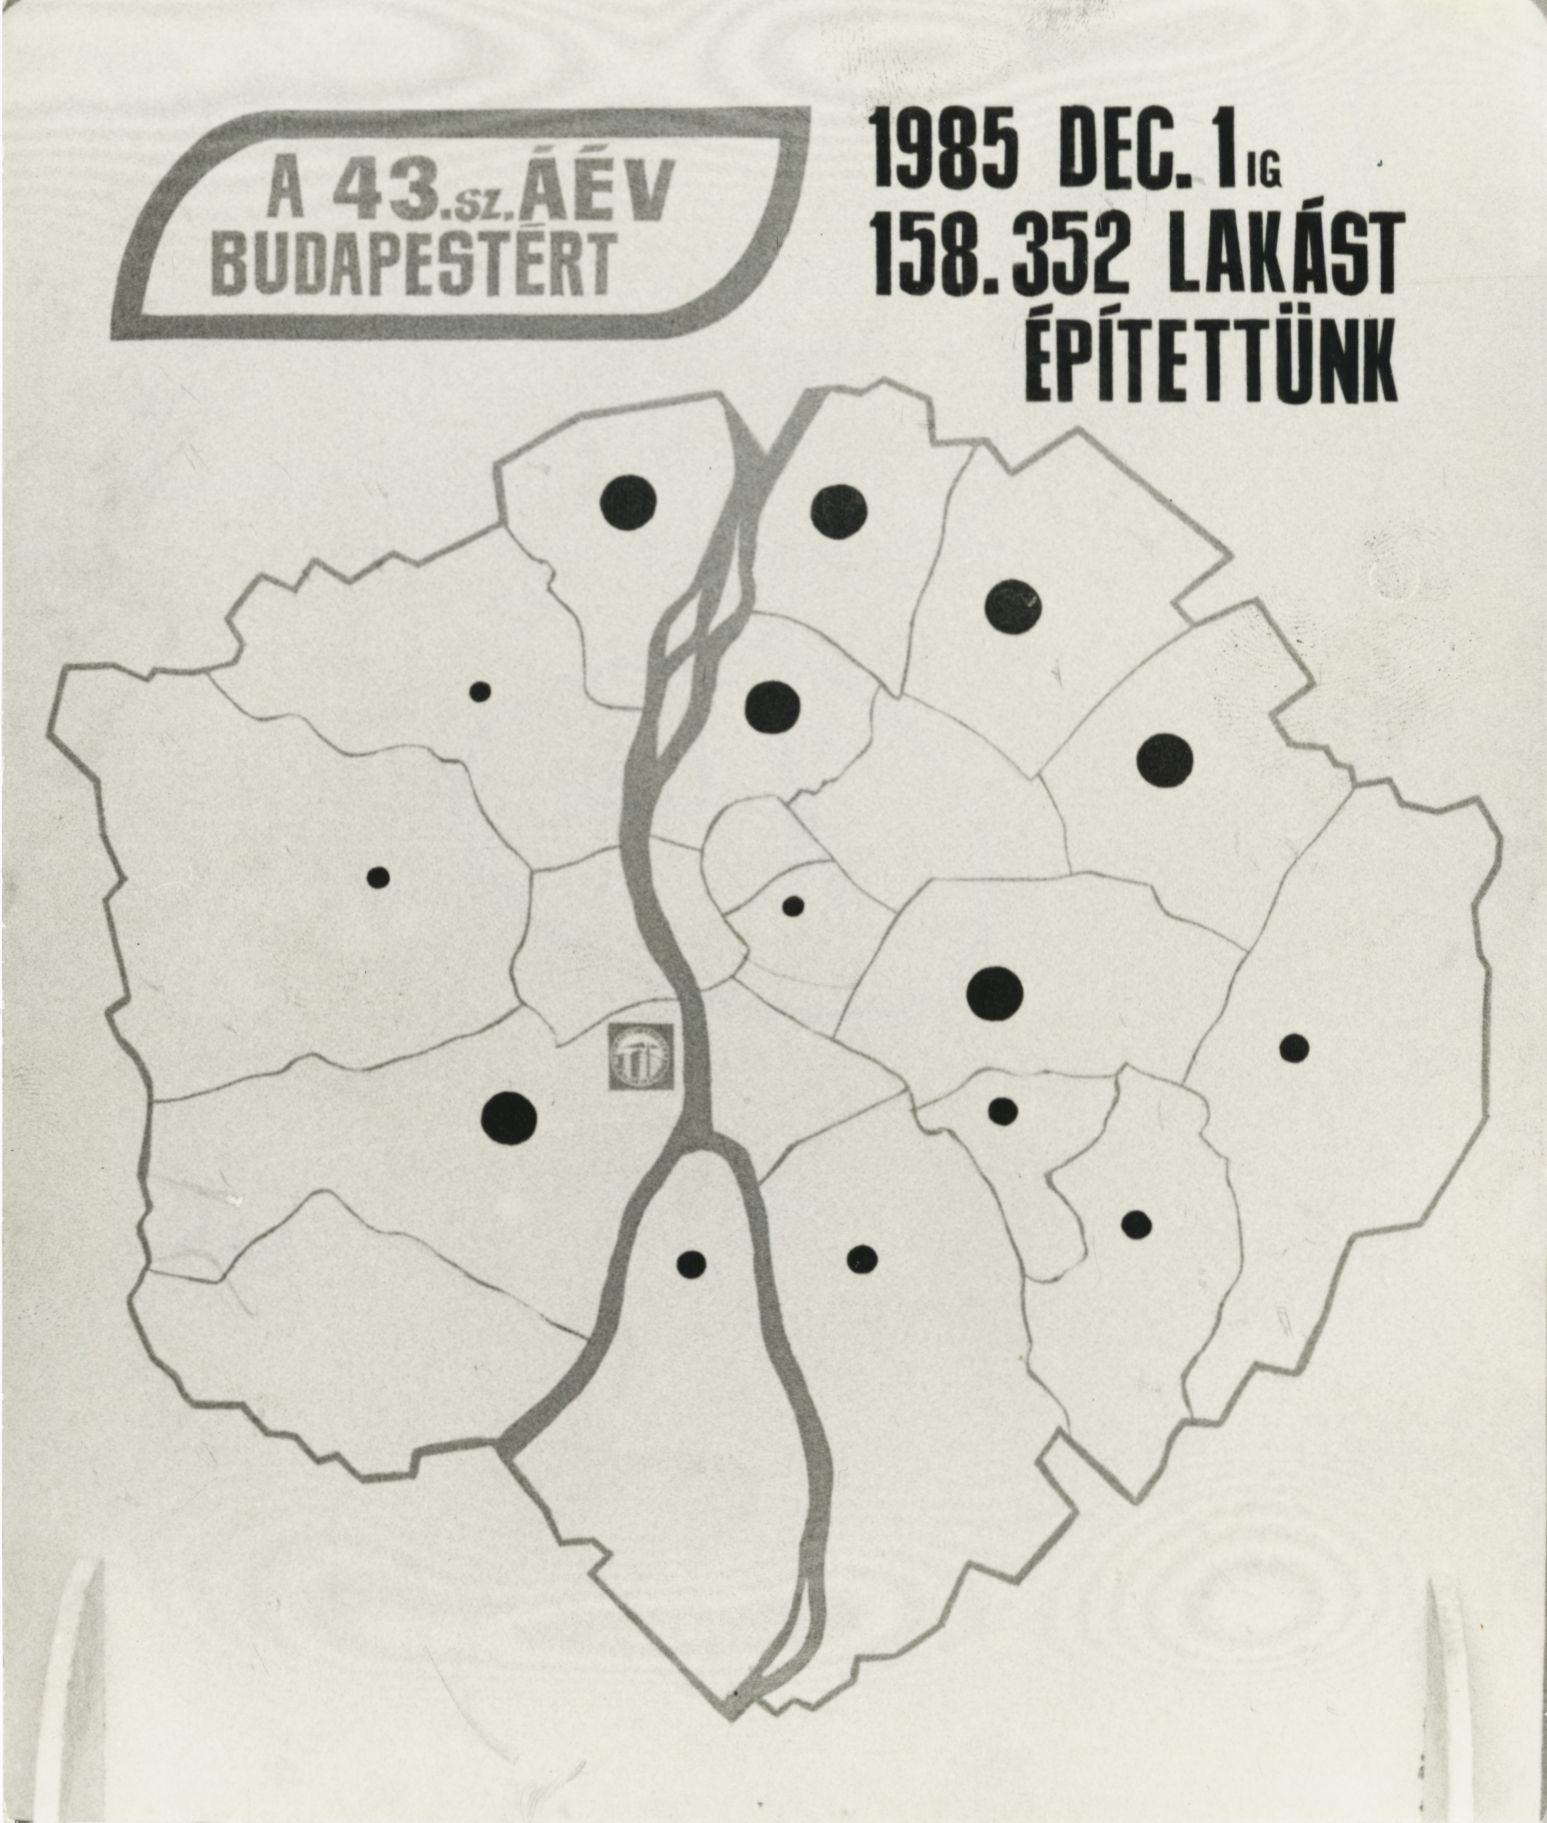 A 43. sz. ÁÉV budapesti plakátja: "1985. december 1-ig 158.352 lakást építettünk"